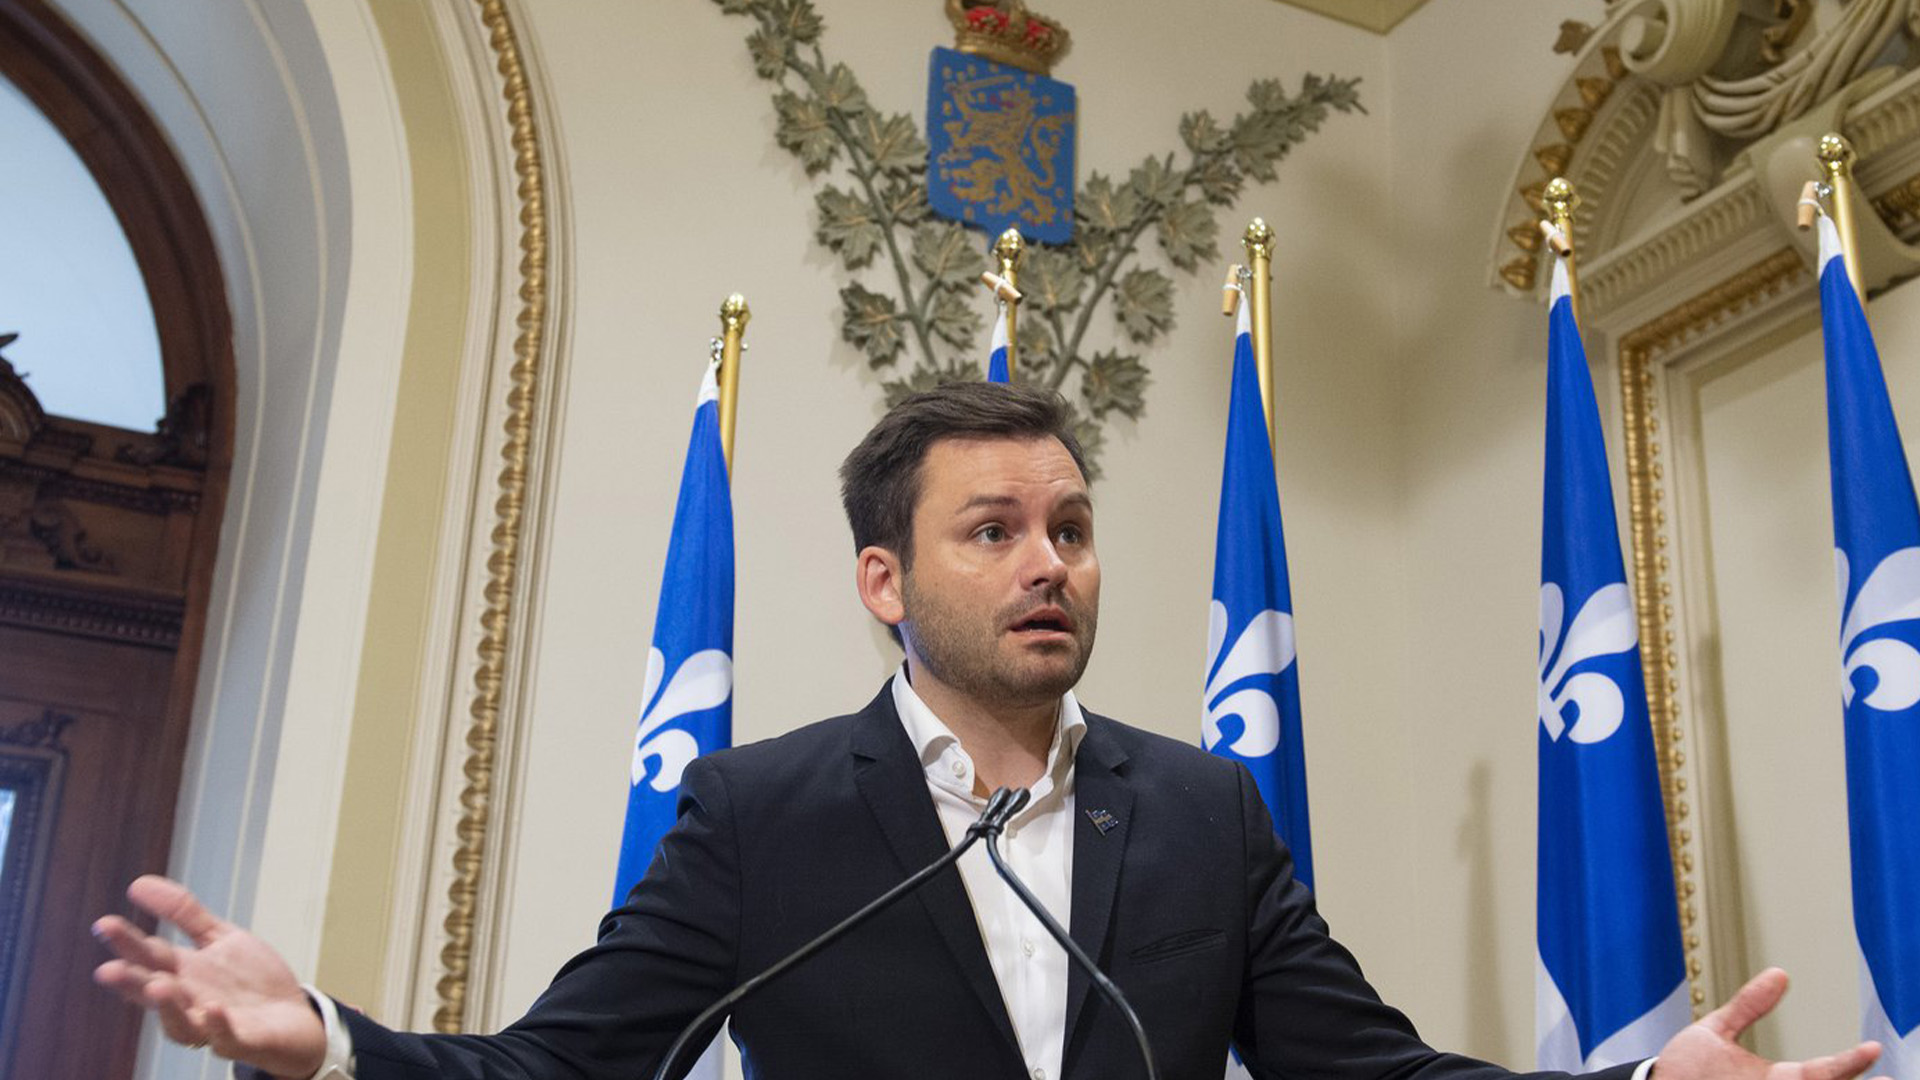 Le chef nouvellement élu du Parti québécois, Paul St-Pierre Plamondon, répond aux questions des journalistes alors qu'il assiste à sa première réunion du caucus, le mercredi 14 octobre 2020 à l'Assemblée législative de Québec.